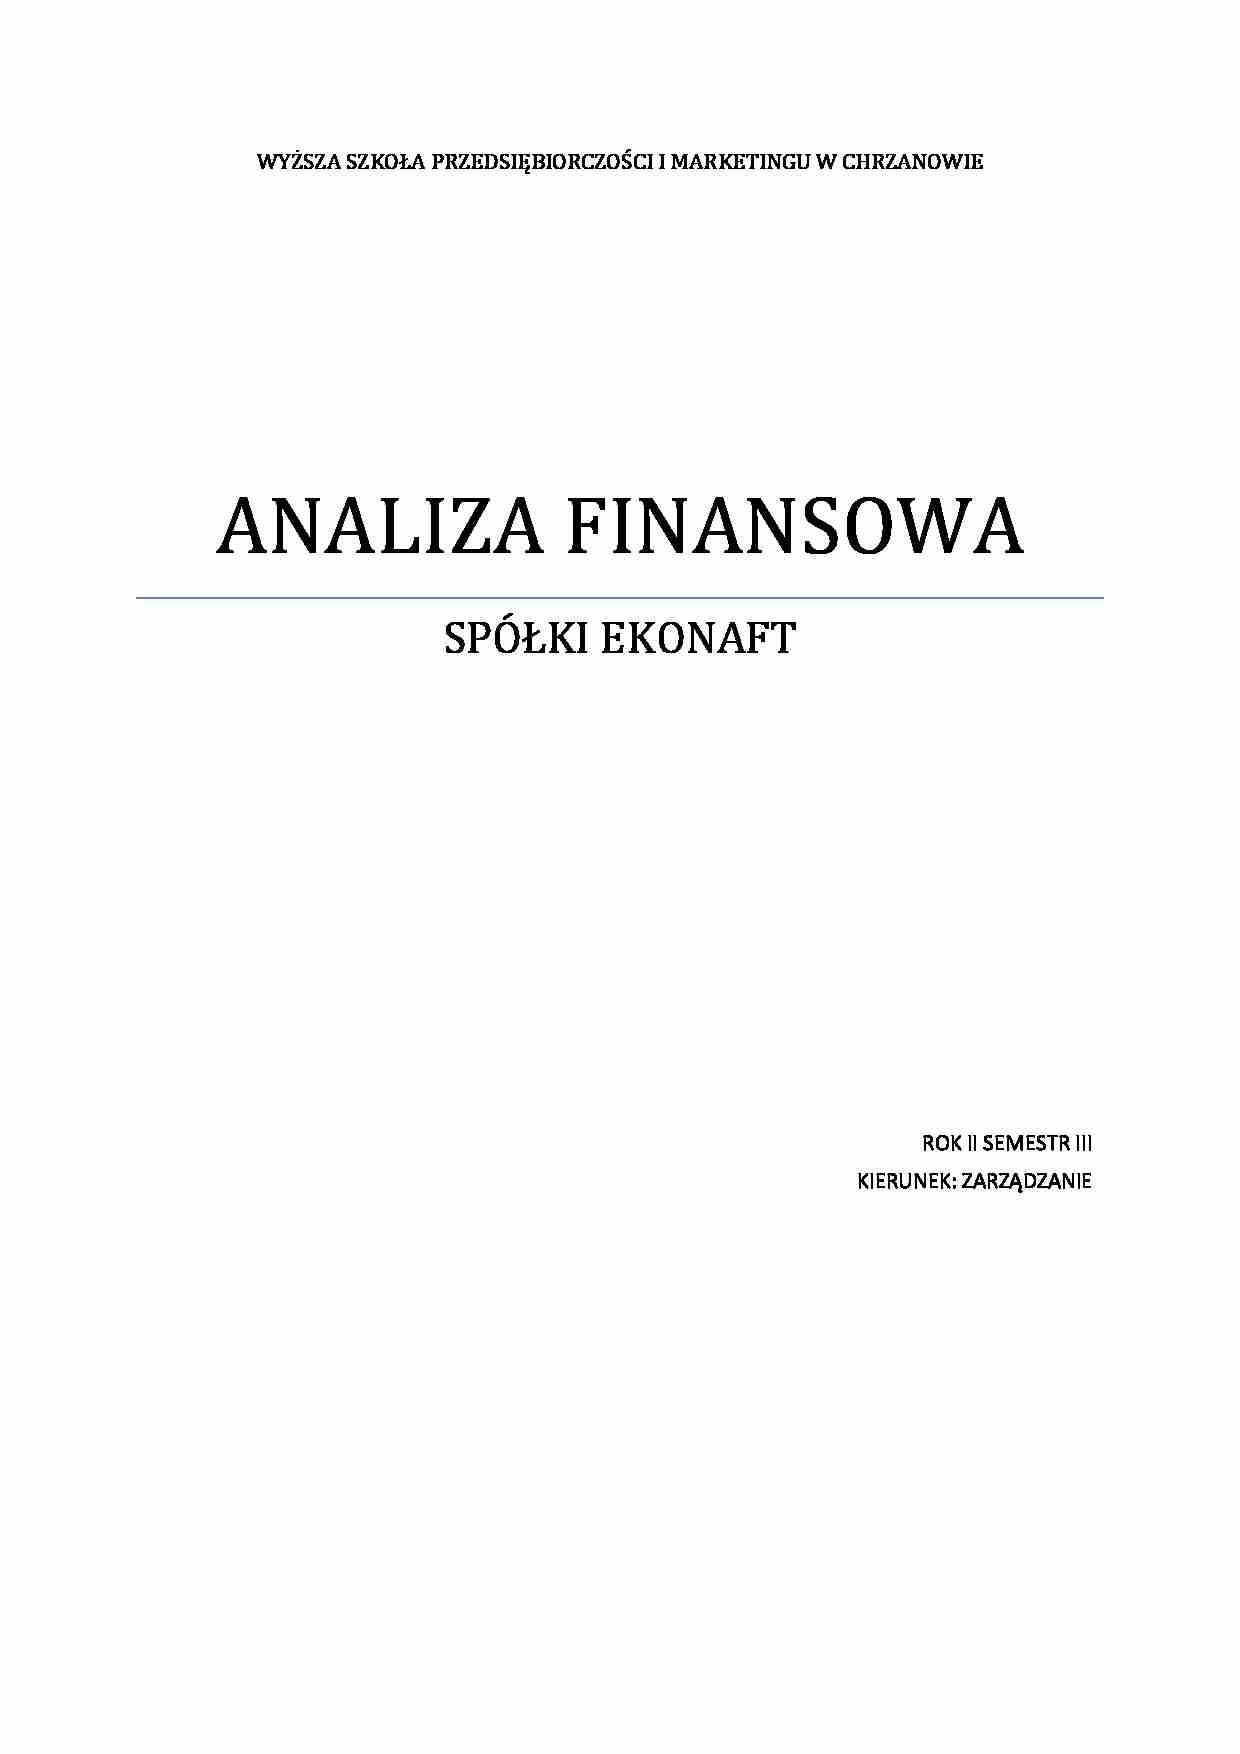 Analiza finansowa Ekonaft - strona 1